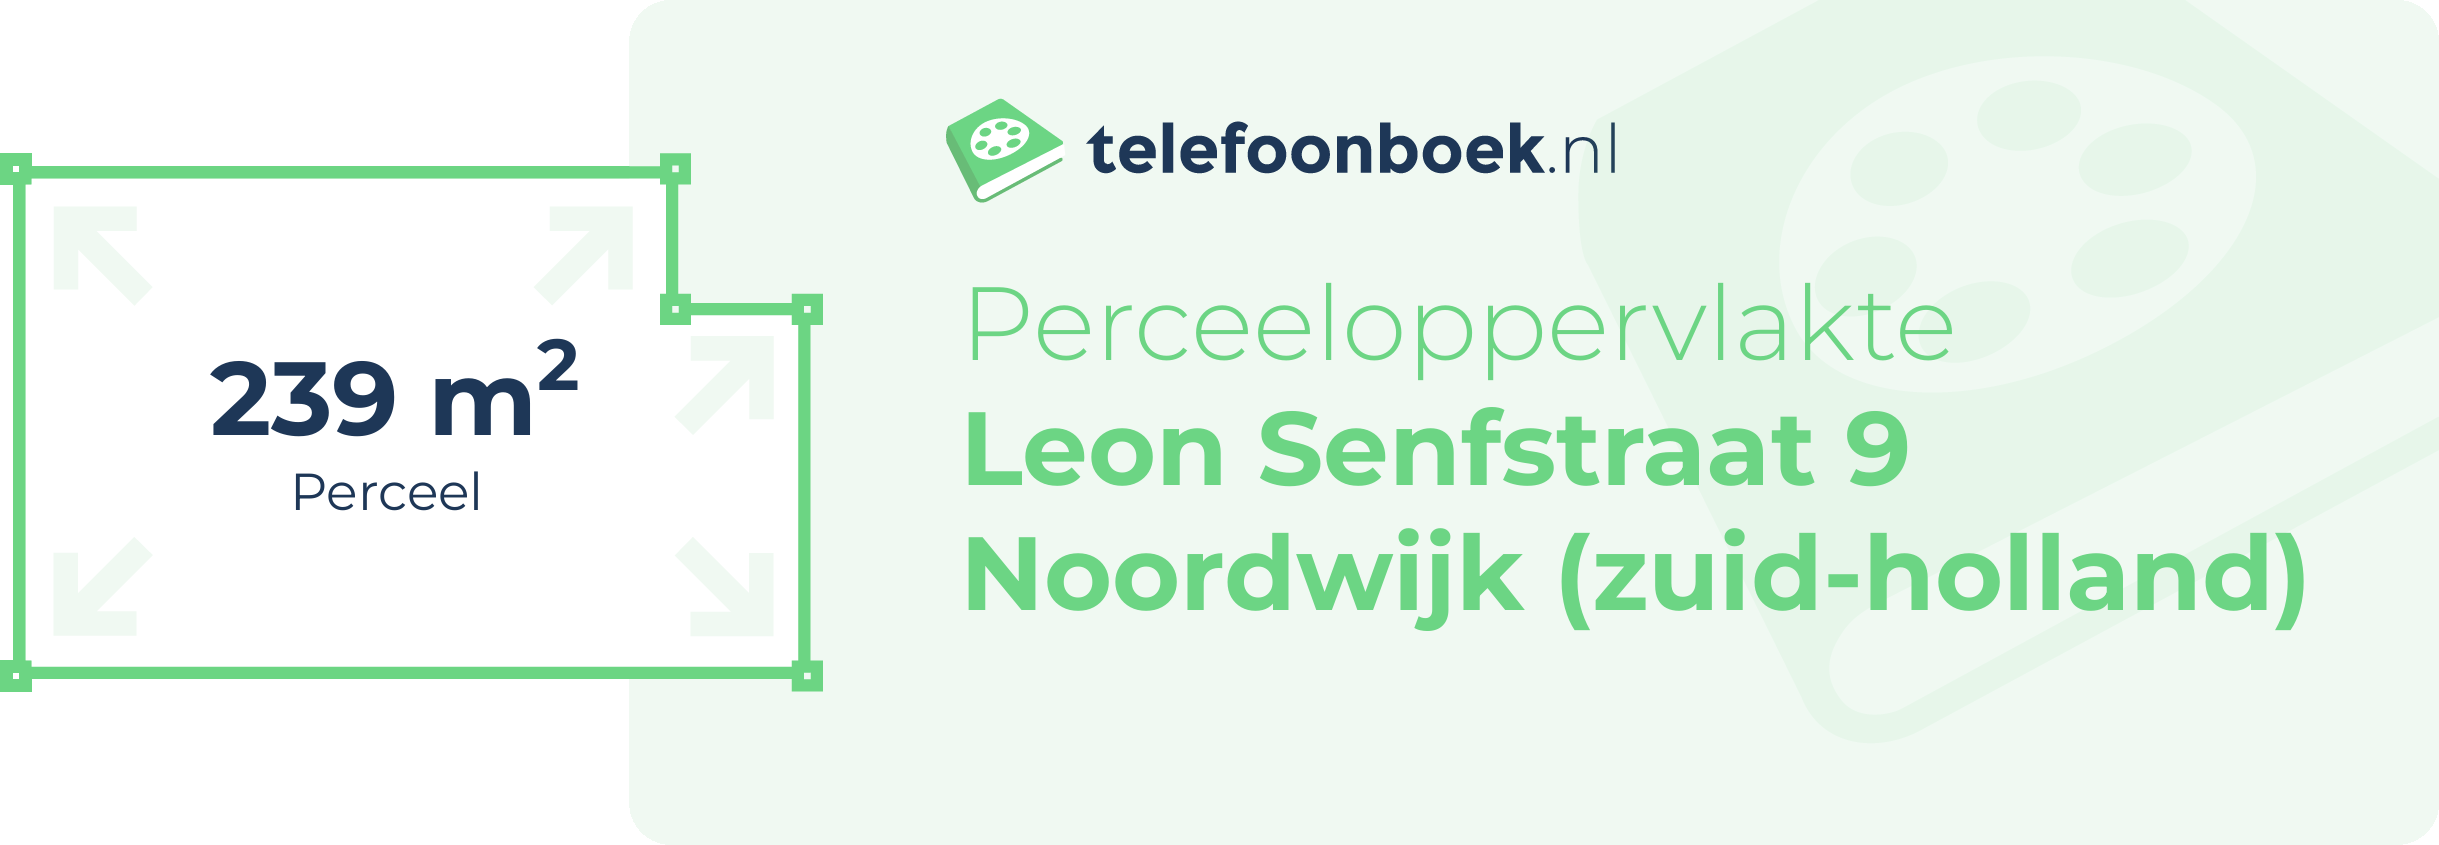 Perceeloppervlakte Leon Senfstraat 9 Noordwijk (Zuid-Holland)